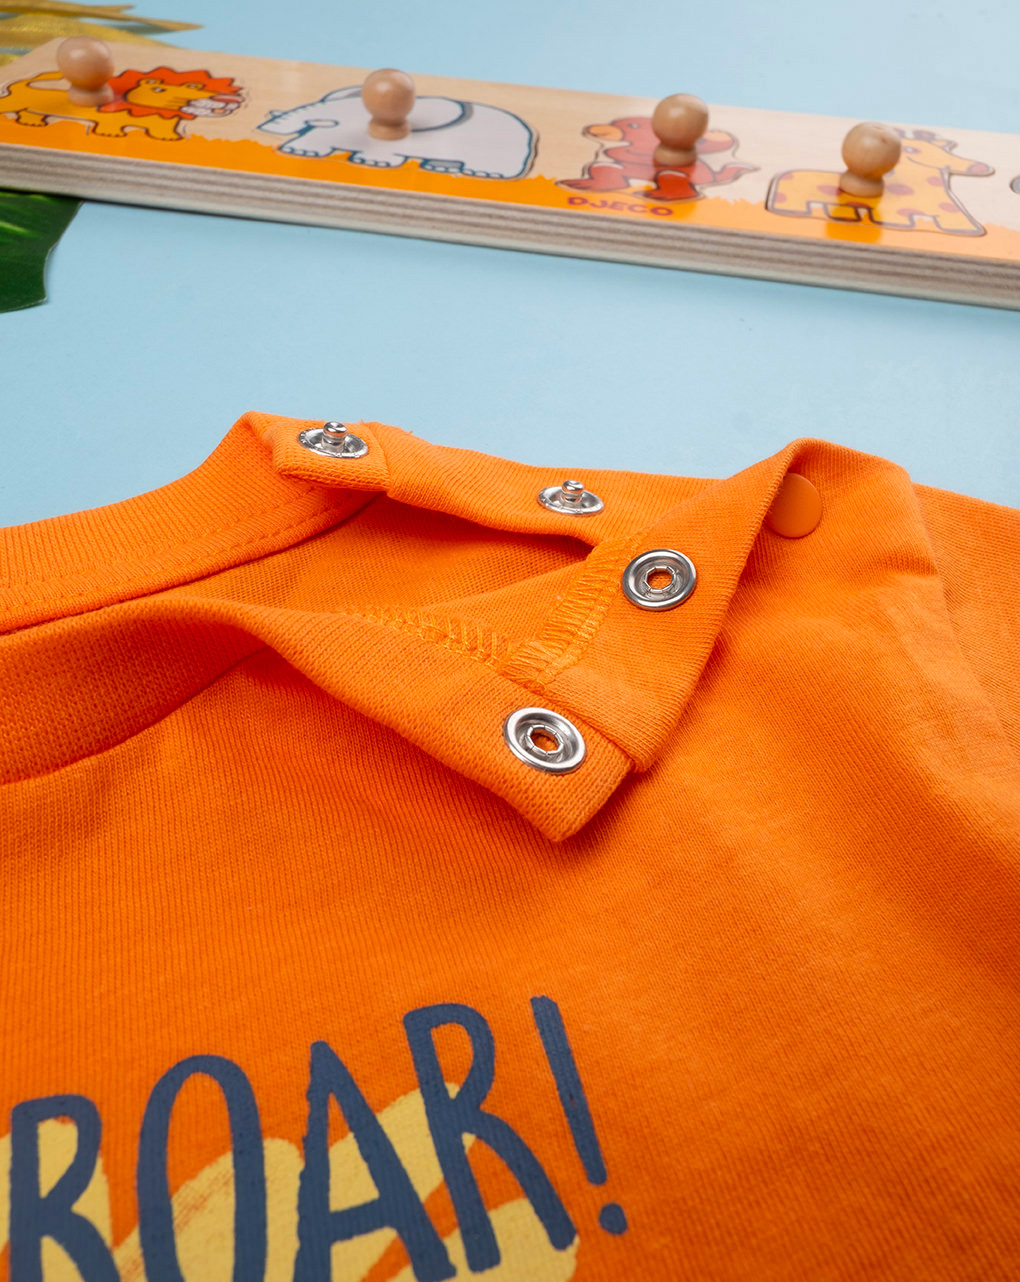 βρεφικό t-shirt πορτοκαλί με λιονταράκια για αγόρι - Prénatal